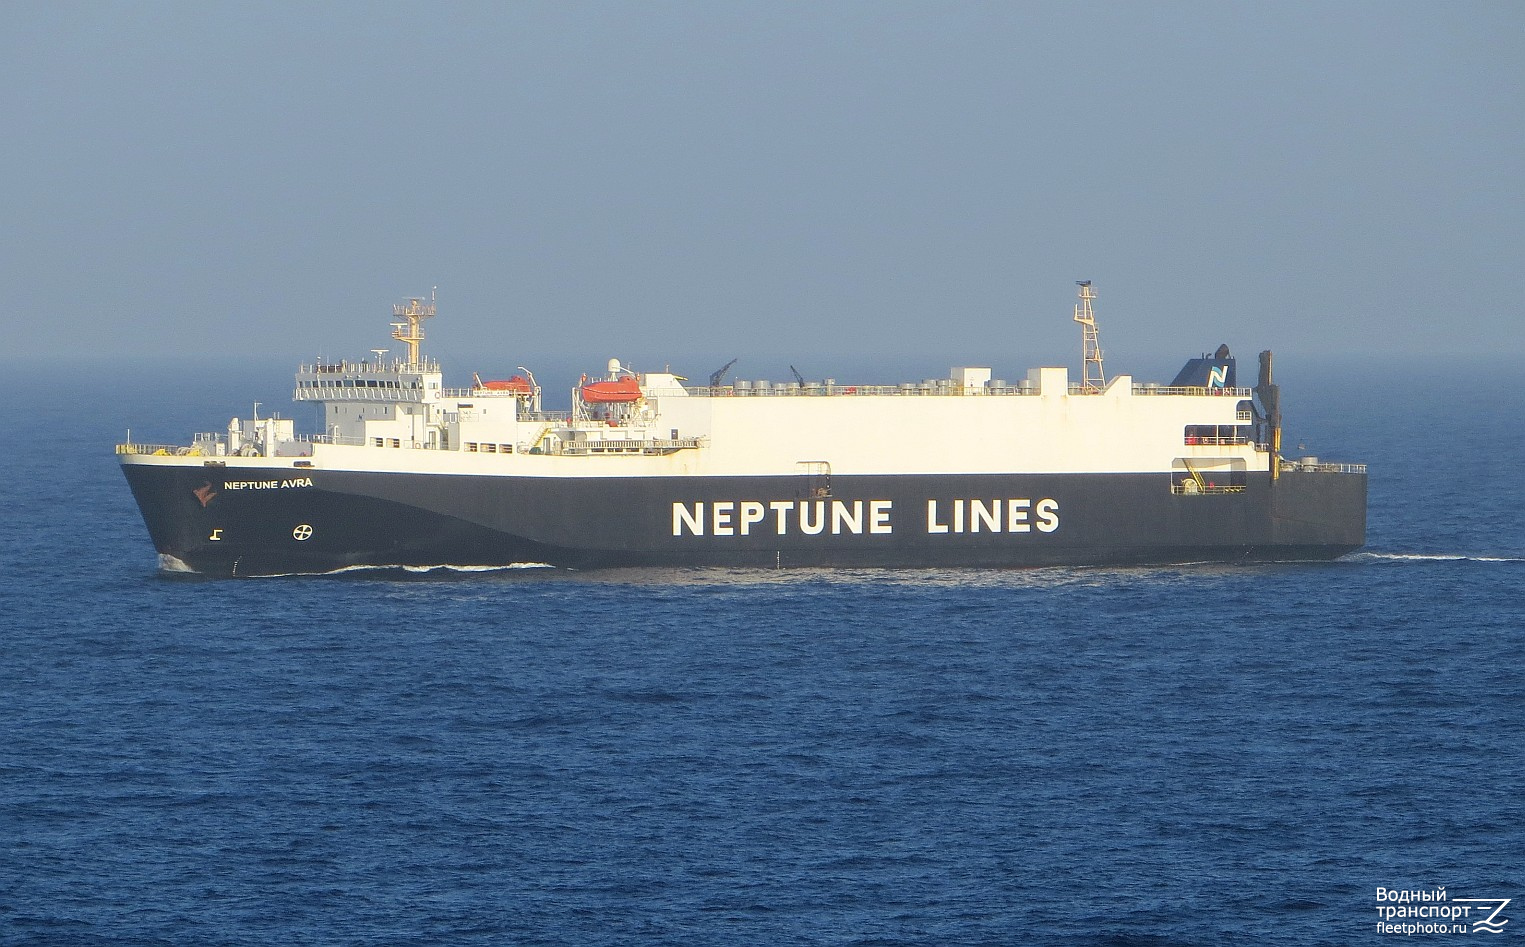 Neptune Avra